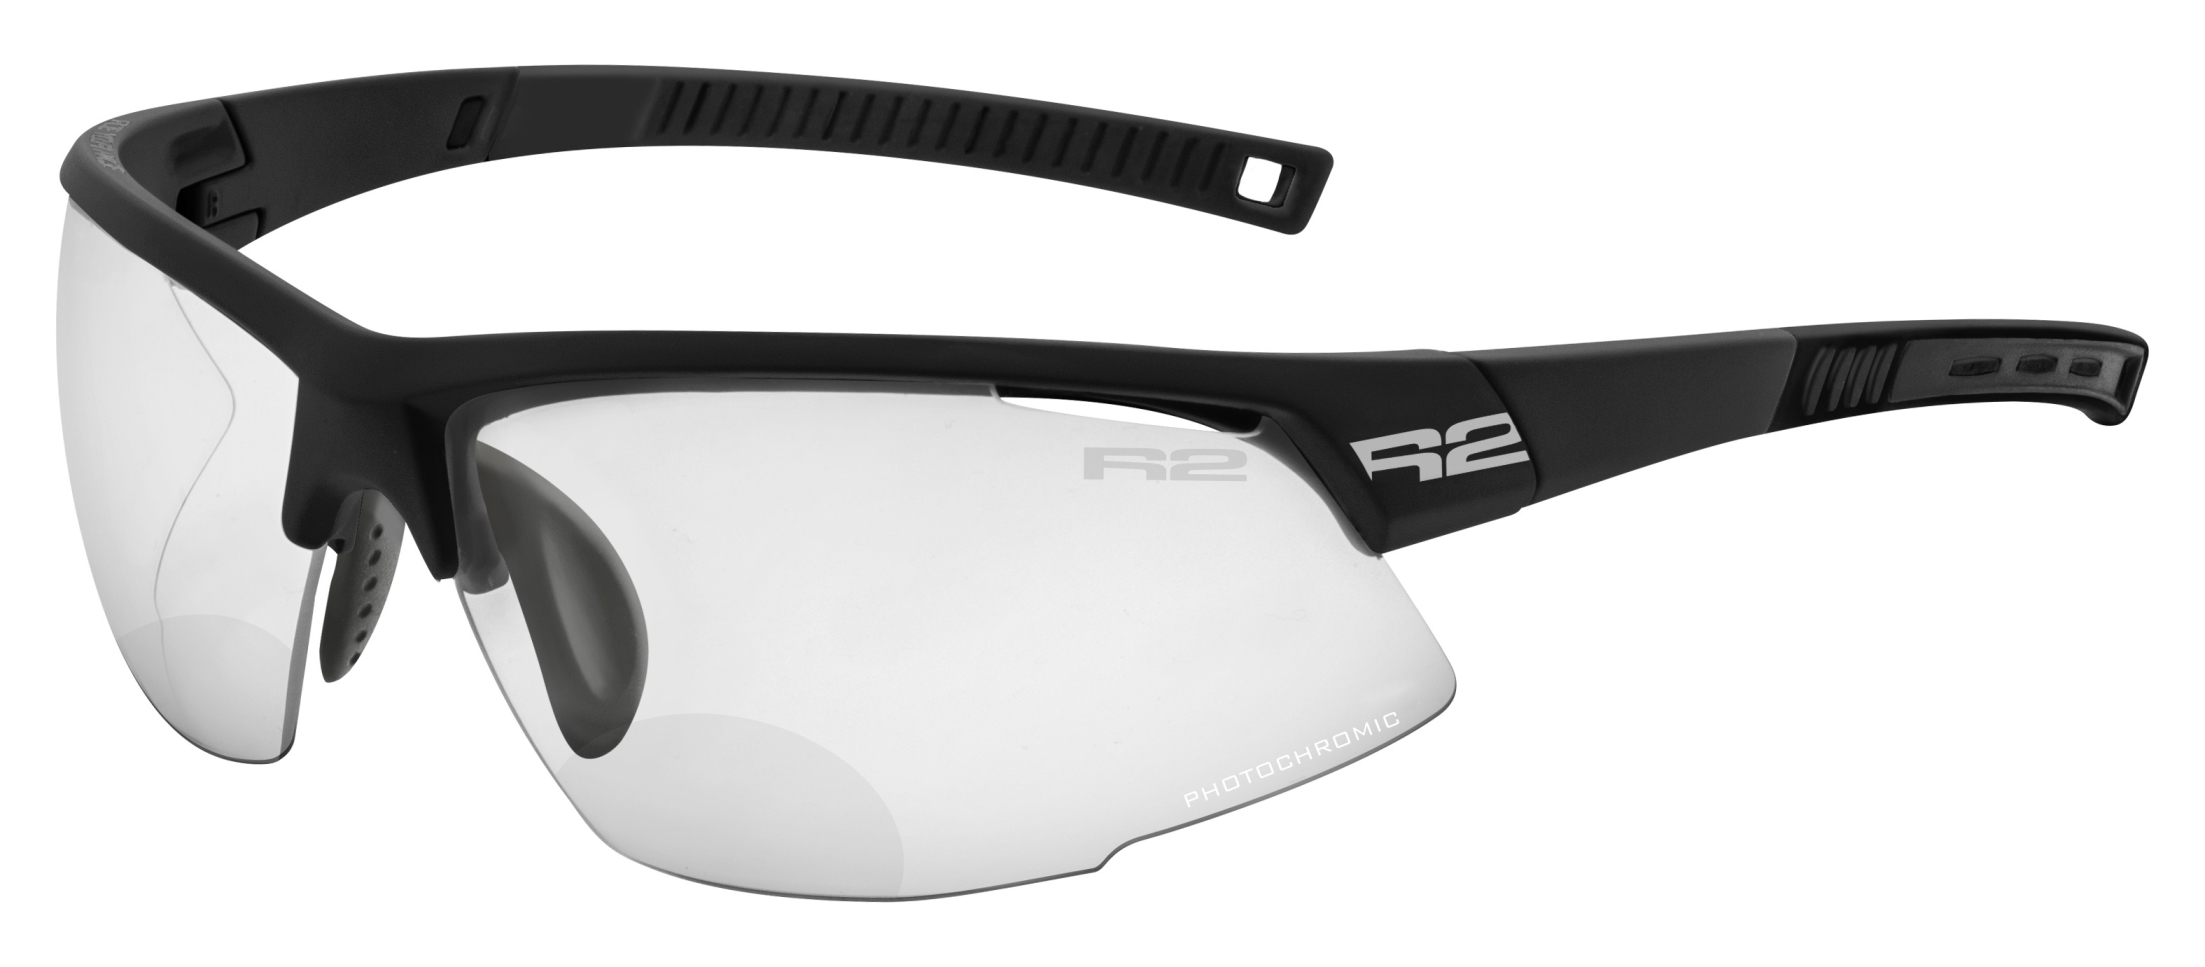 Fotochromatické dioptrické sluneční brýle  R2 RACER AT063A10/1,5